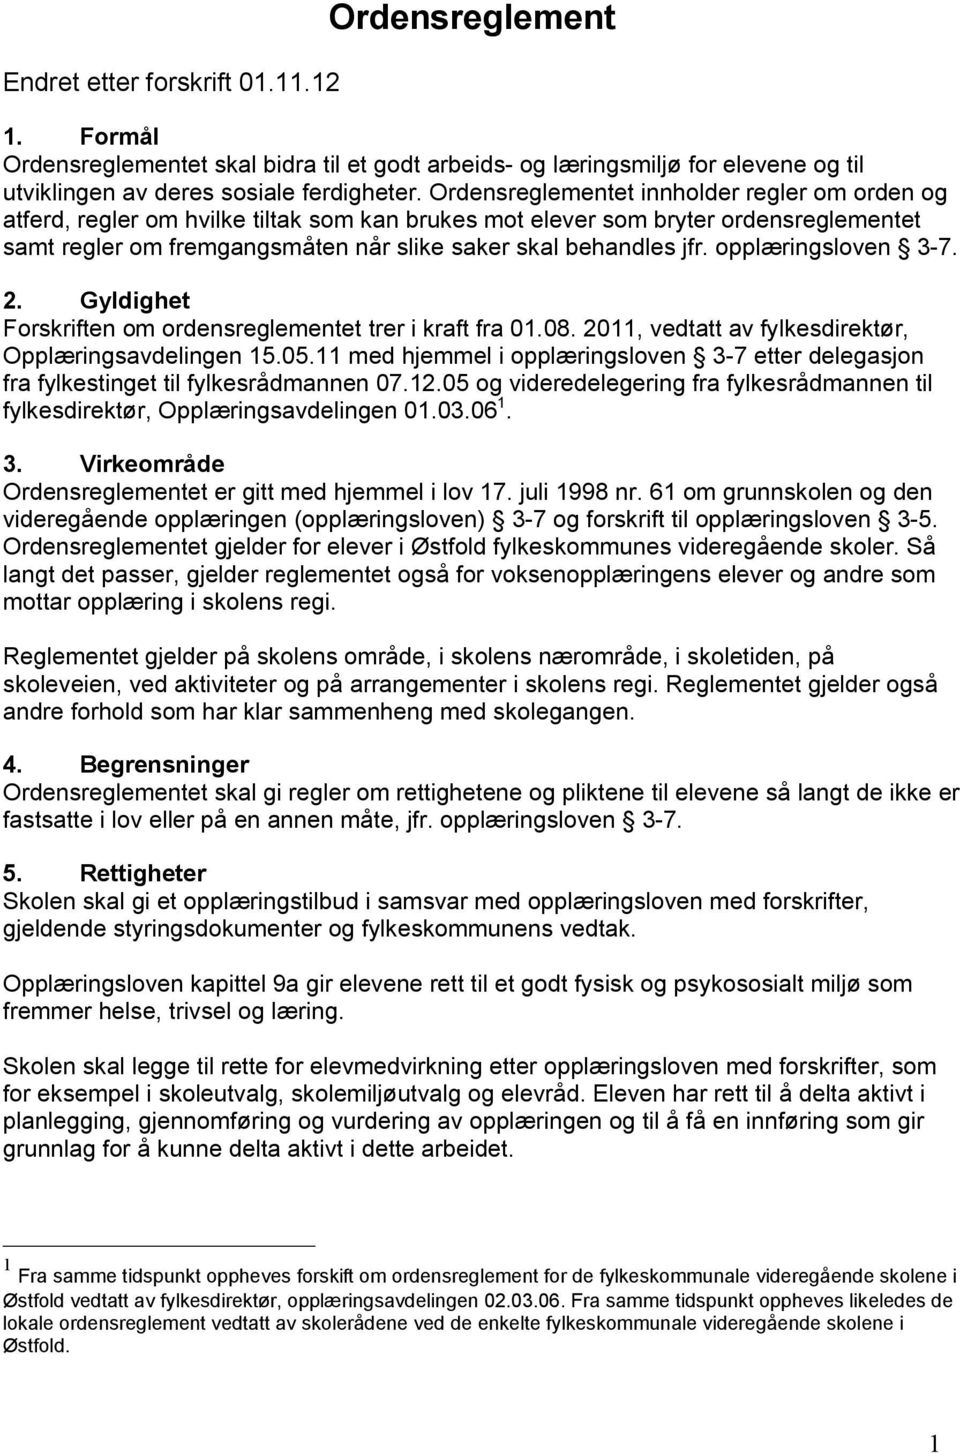 opplæringsloven 3-7. 2. Gyldighet Forskriften om ordensreglementet trer i kraft fra 01.08. 2011, vedtatt av fylkesdirektør, Opplæringsavdelingen 15.05.